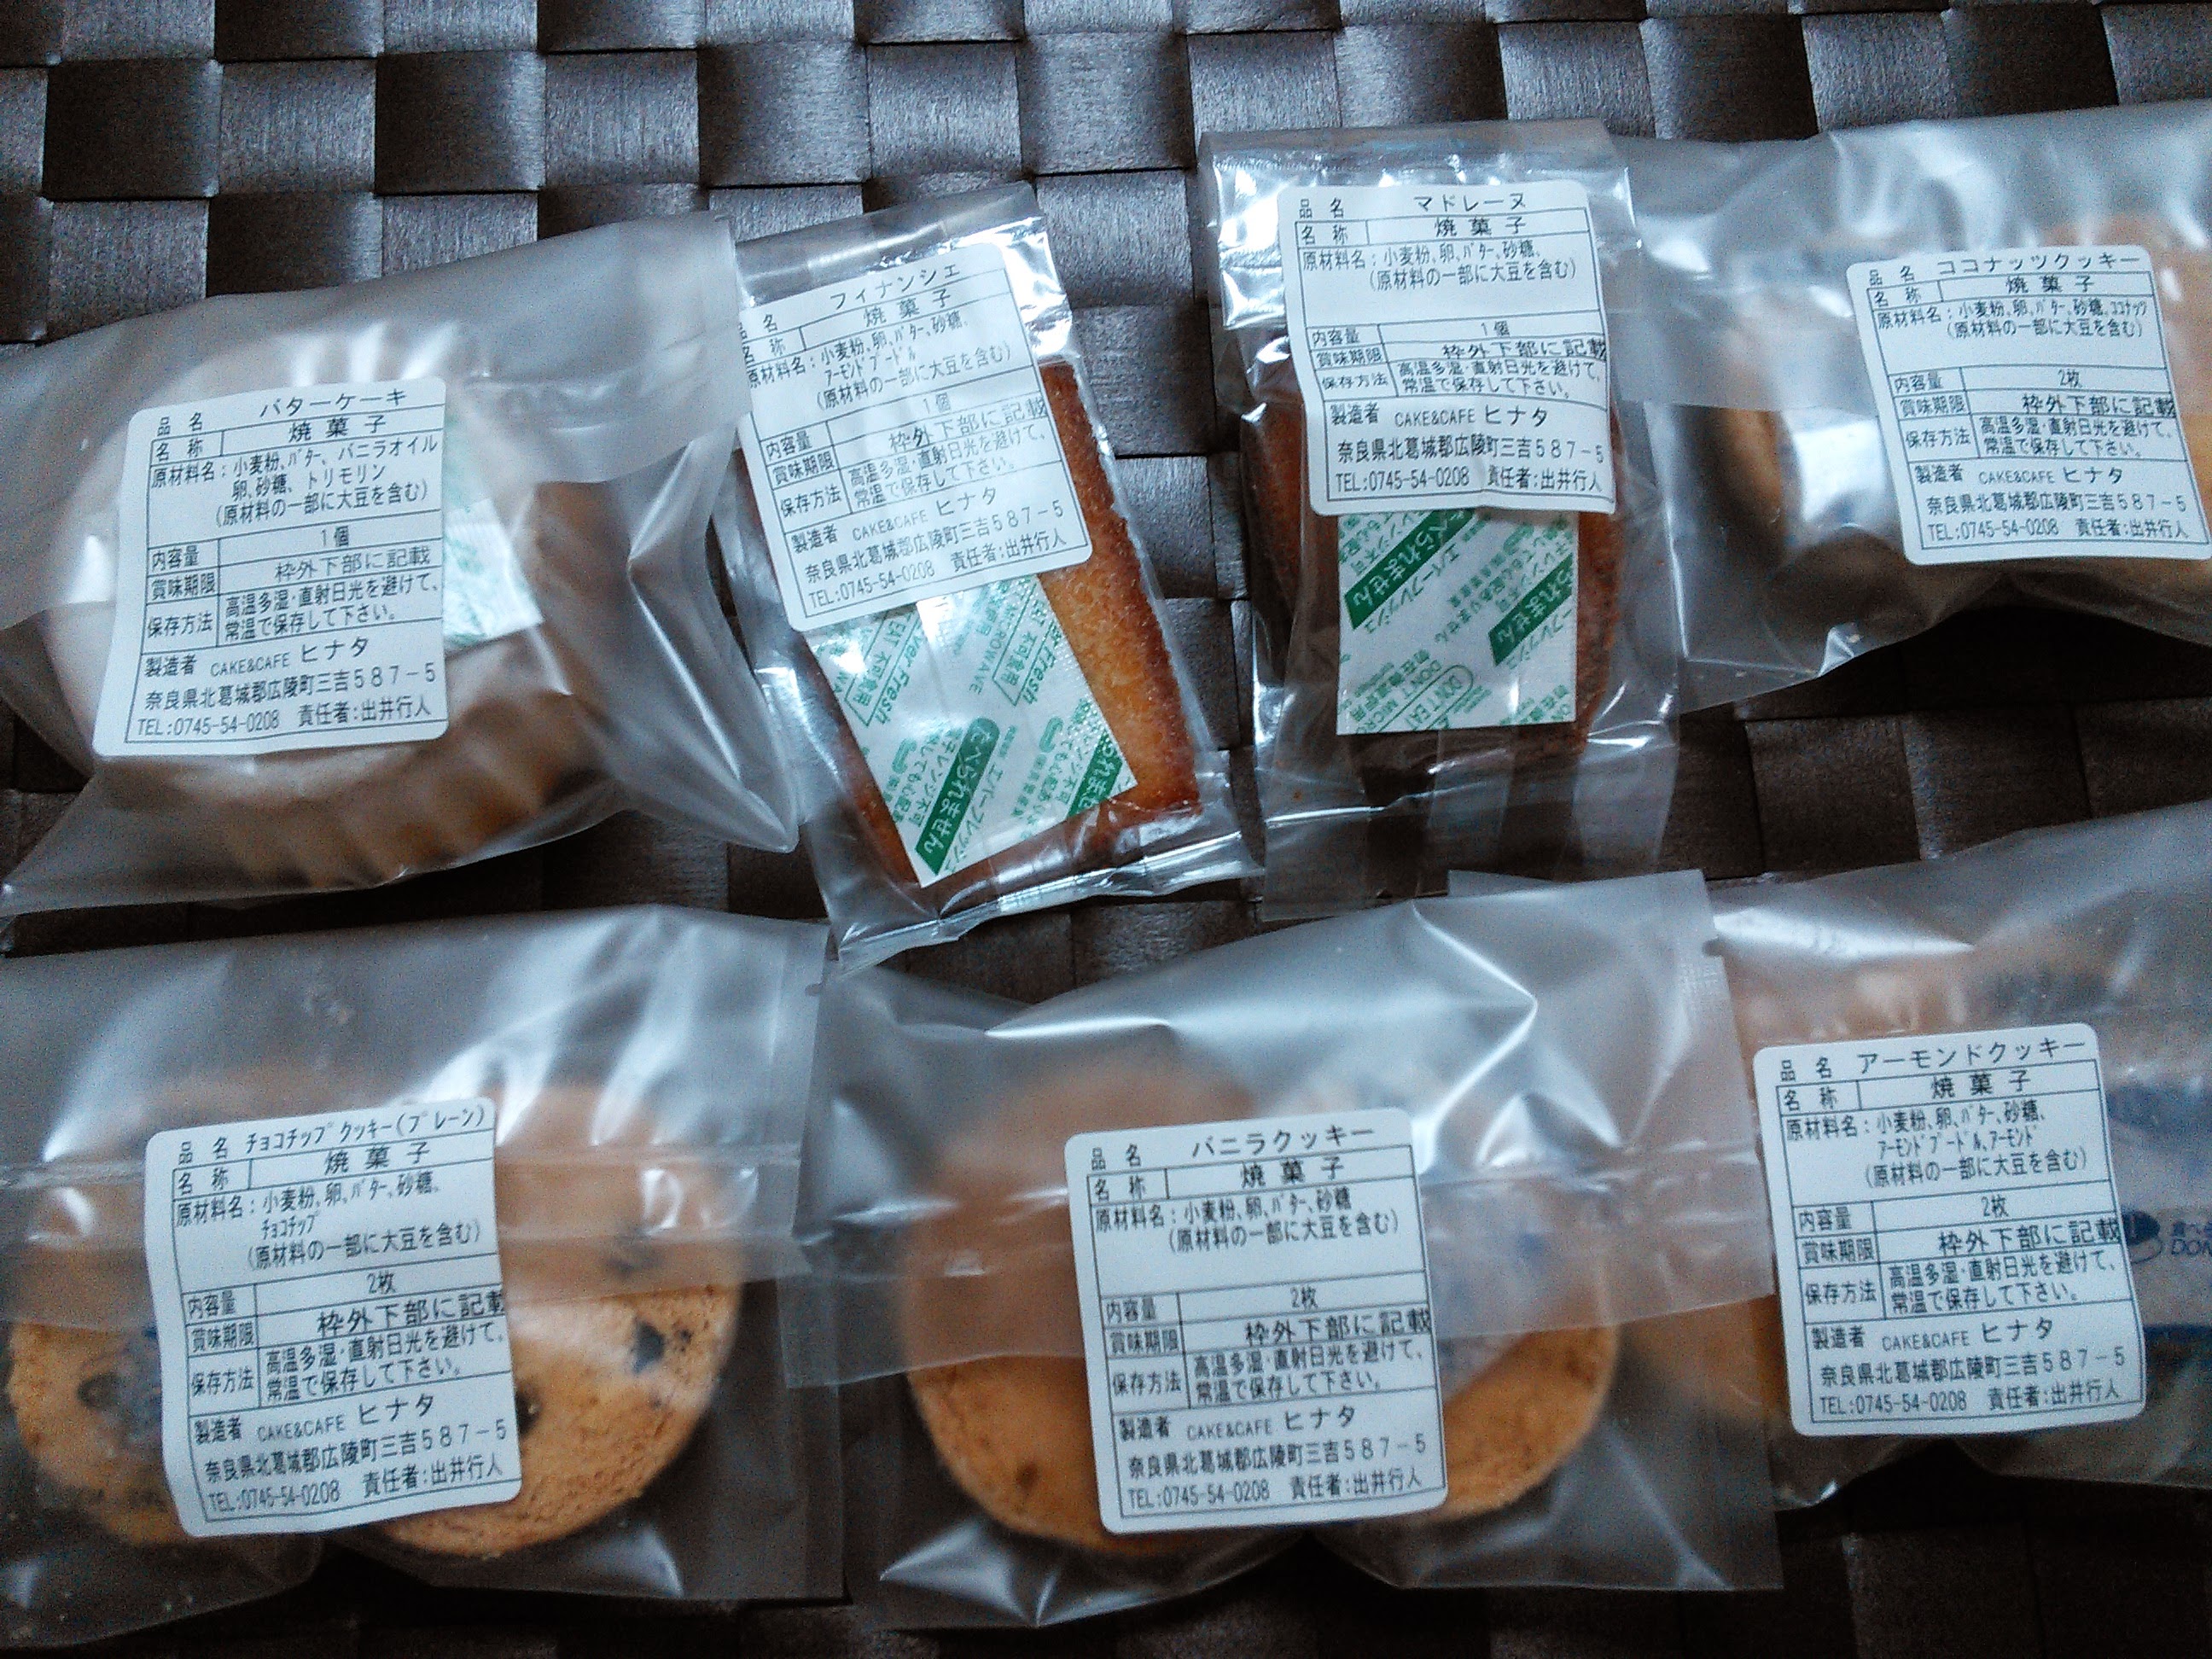 ケーキ ヒナタ 焼き菓子詰め合わせ パッケージが可愛いスウィーツショップ 大阪 奈良グルメのブログ ミシュランごっこ